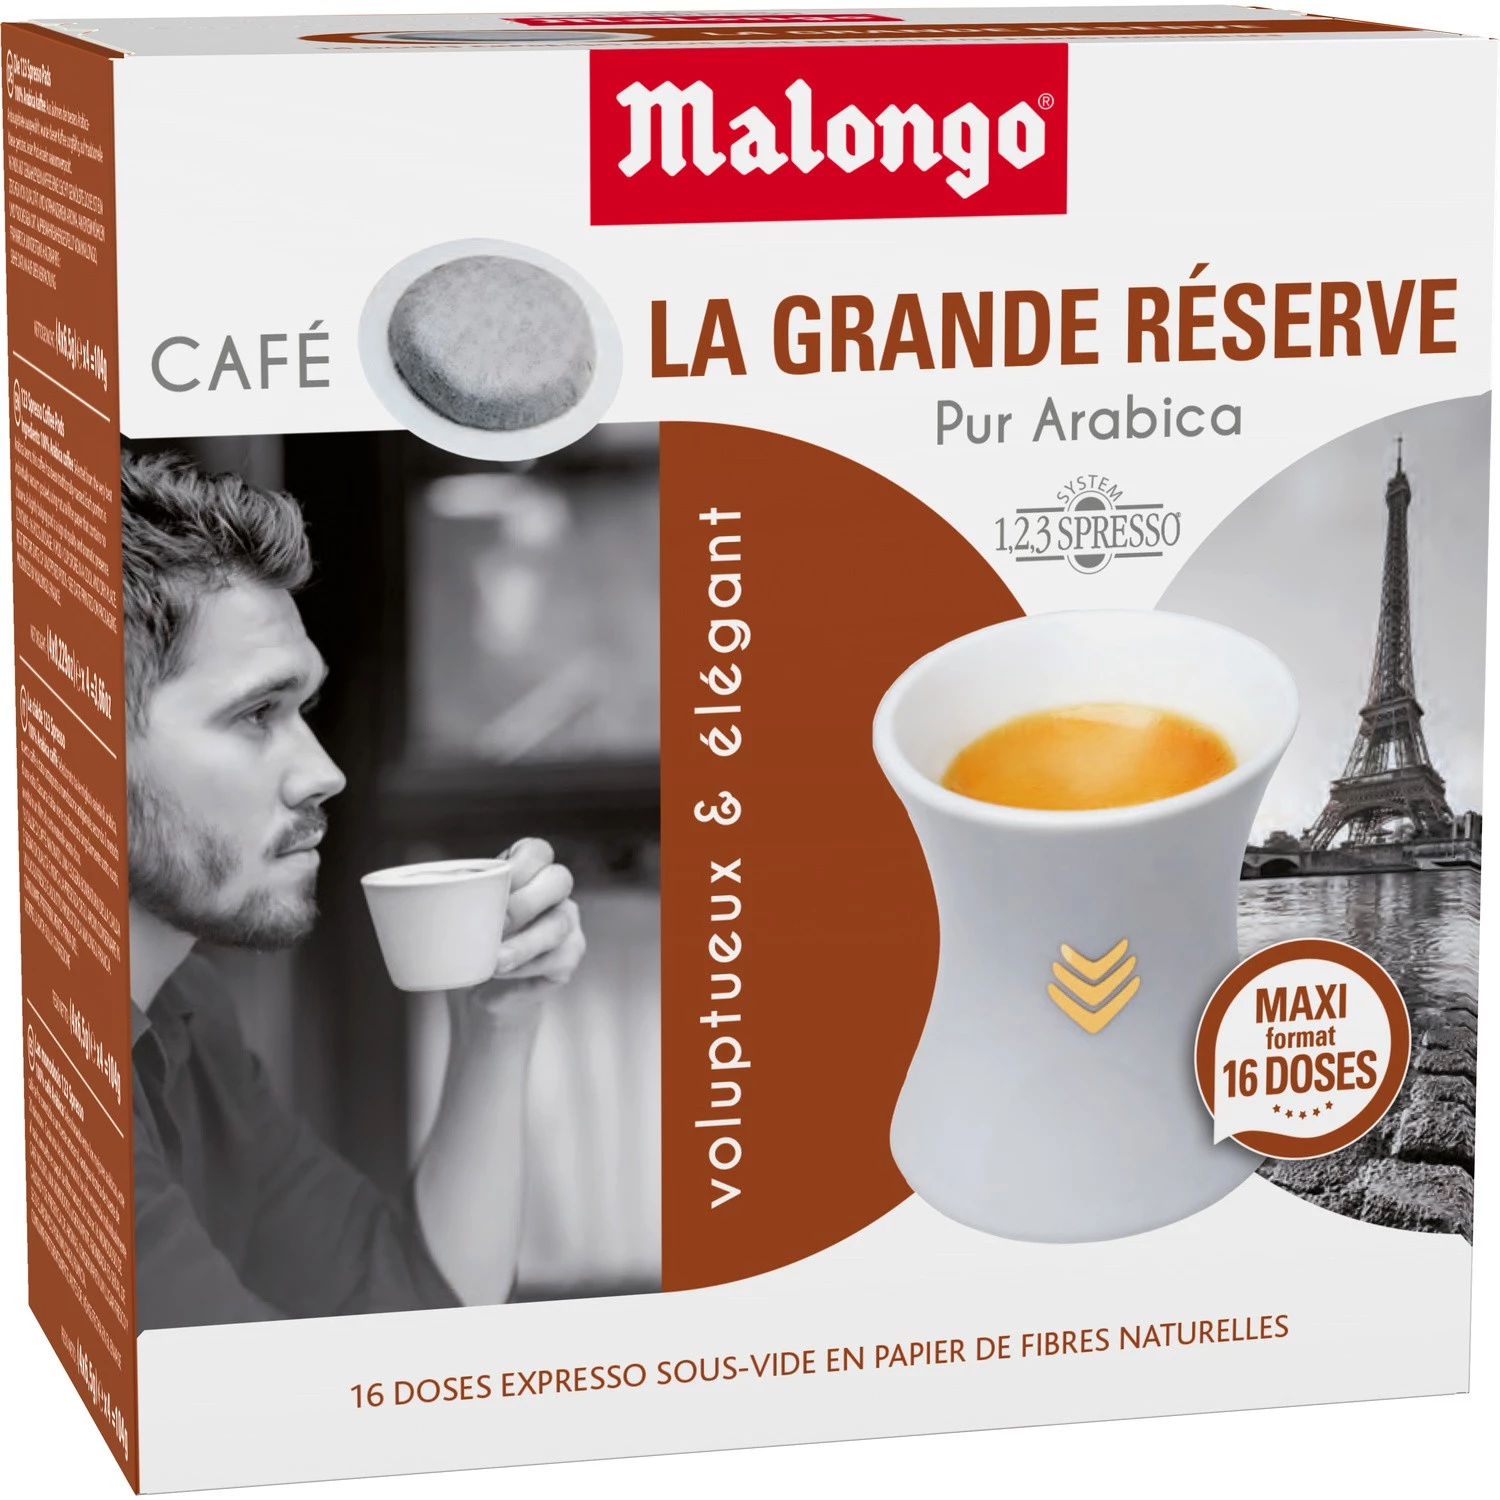 纯阿拉比卡咖啡大量储备 x16 包 104 克 - MALONGO